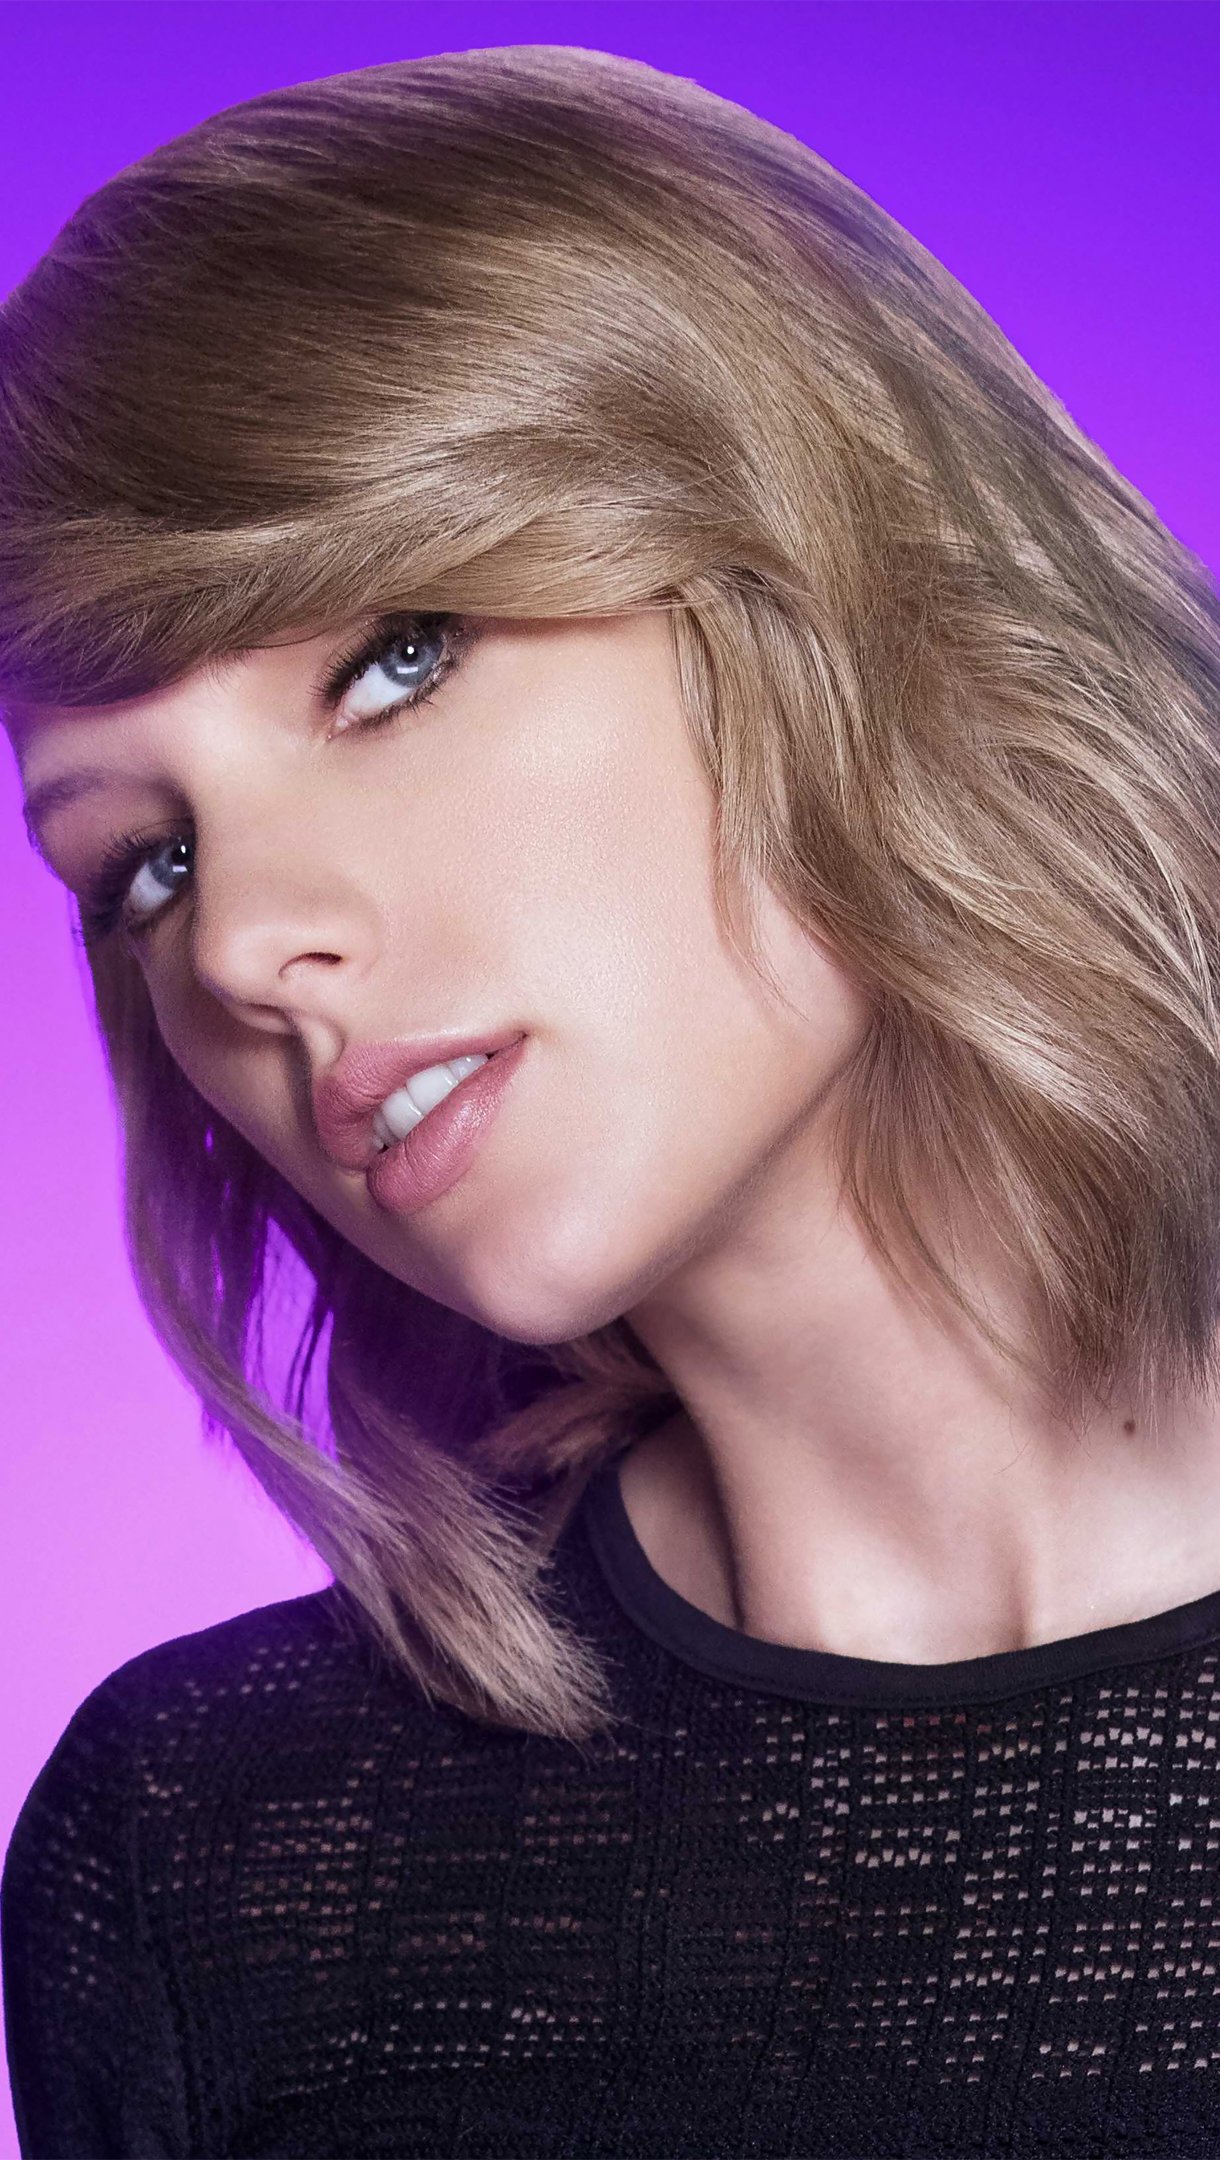 Taylor Swift Wallpaper 4k Ultra HD